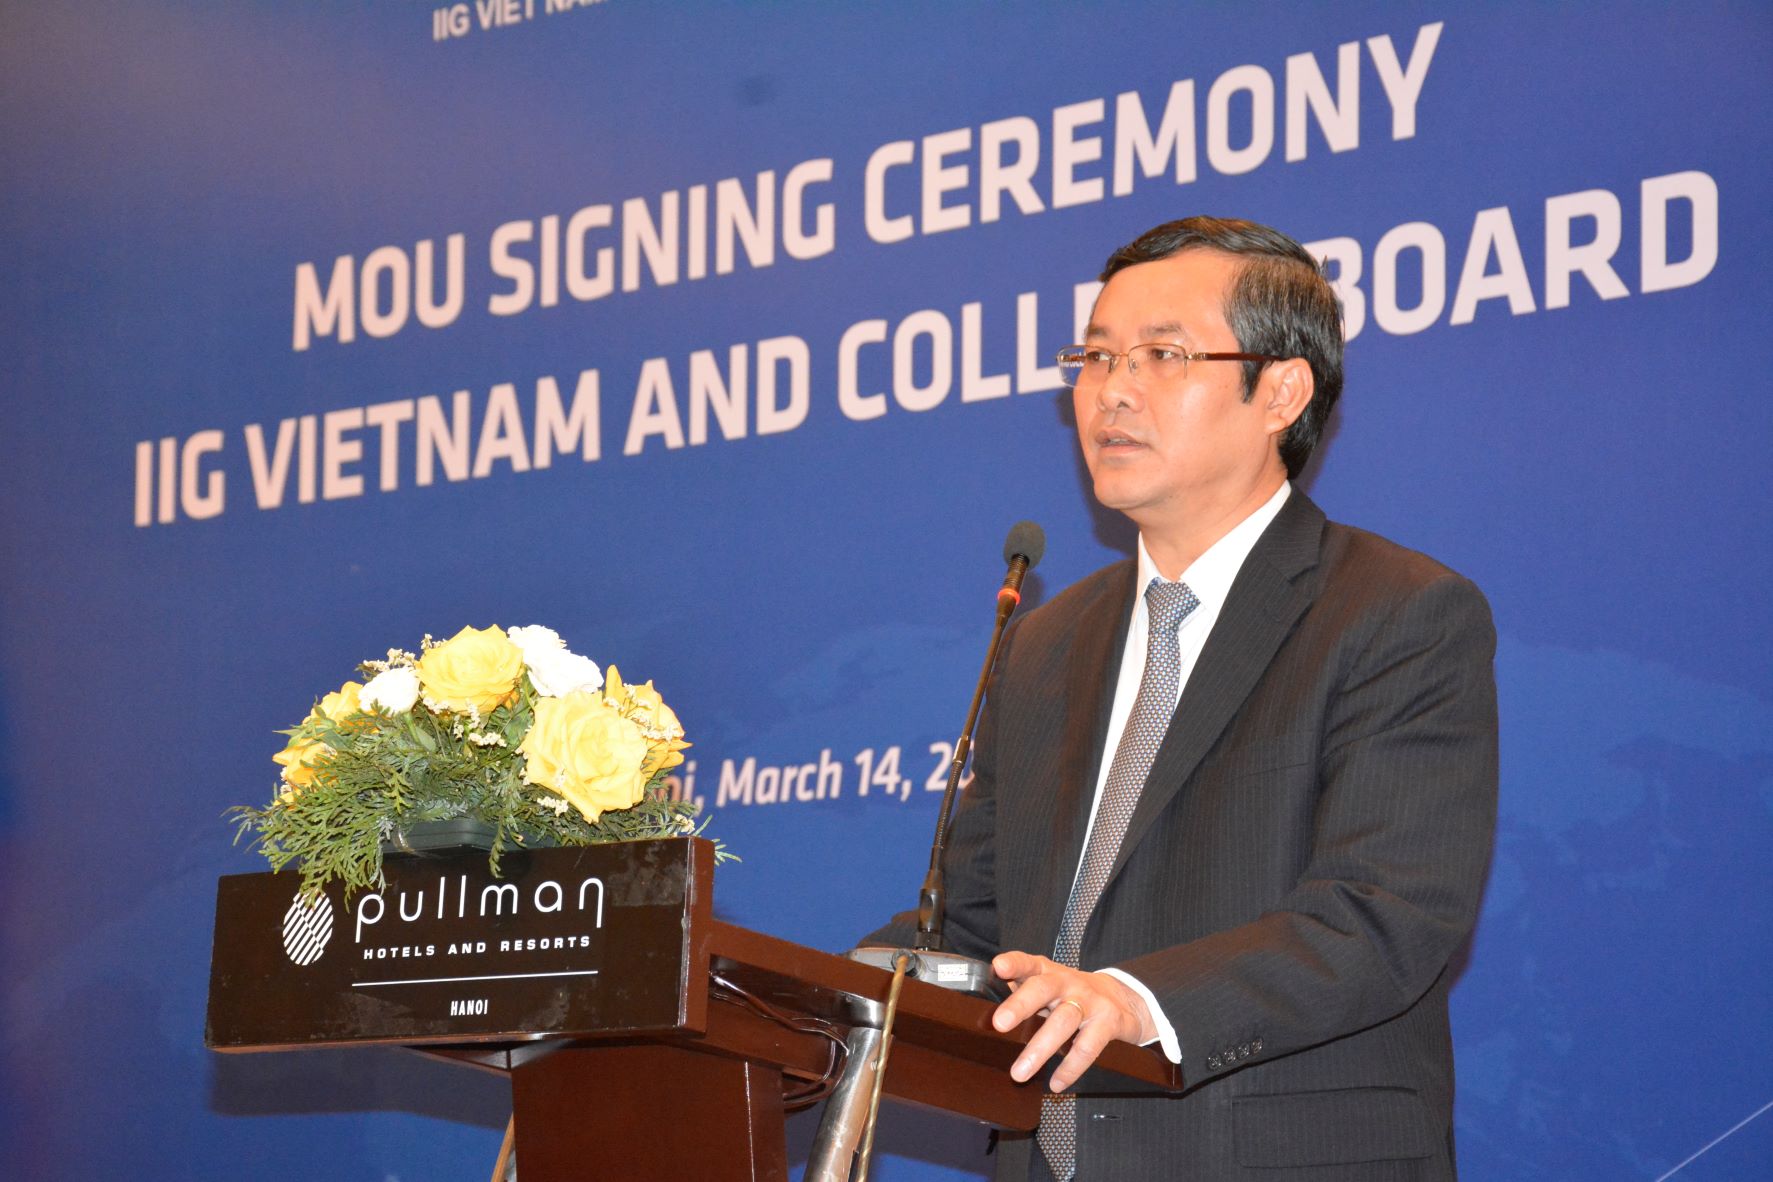 Thứ trưởng Bộ GD&ĐT Nguyễn Văn Phúc phát biểu tại buổi lễ.